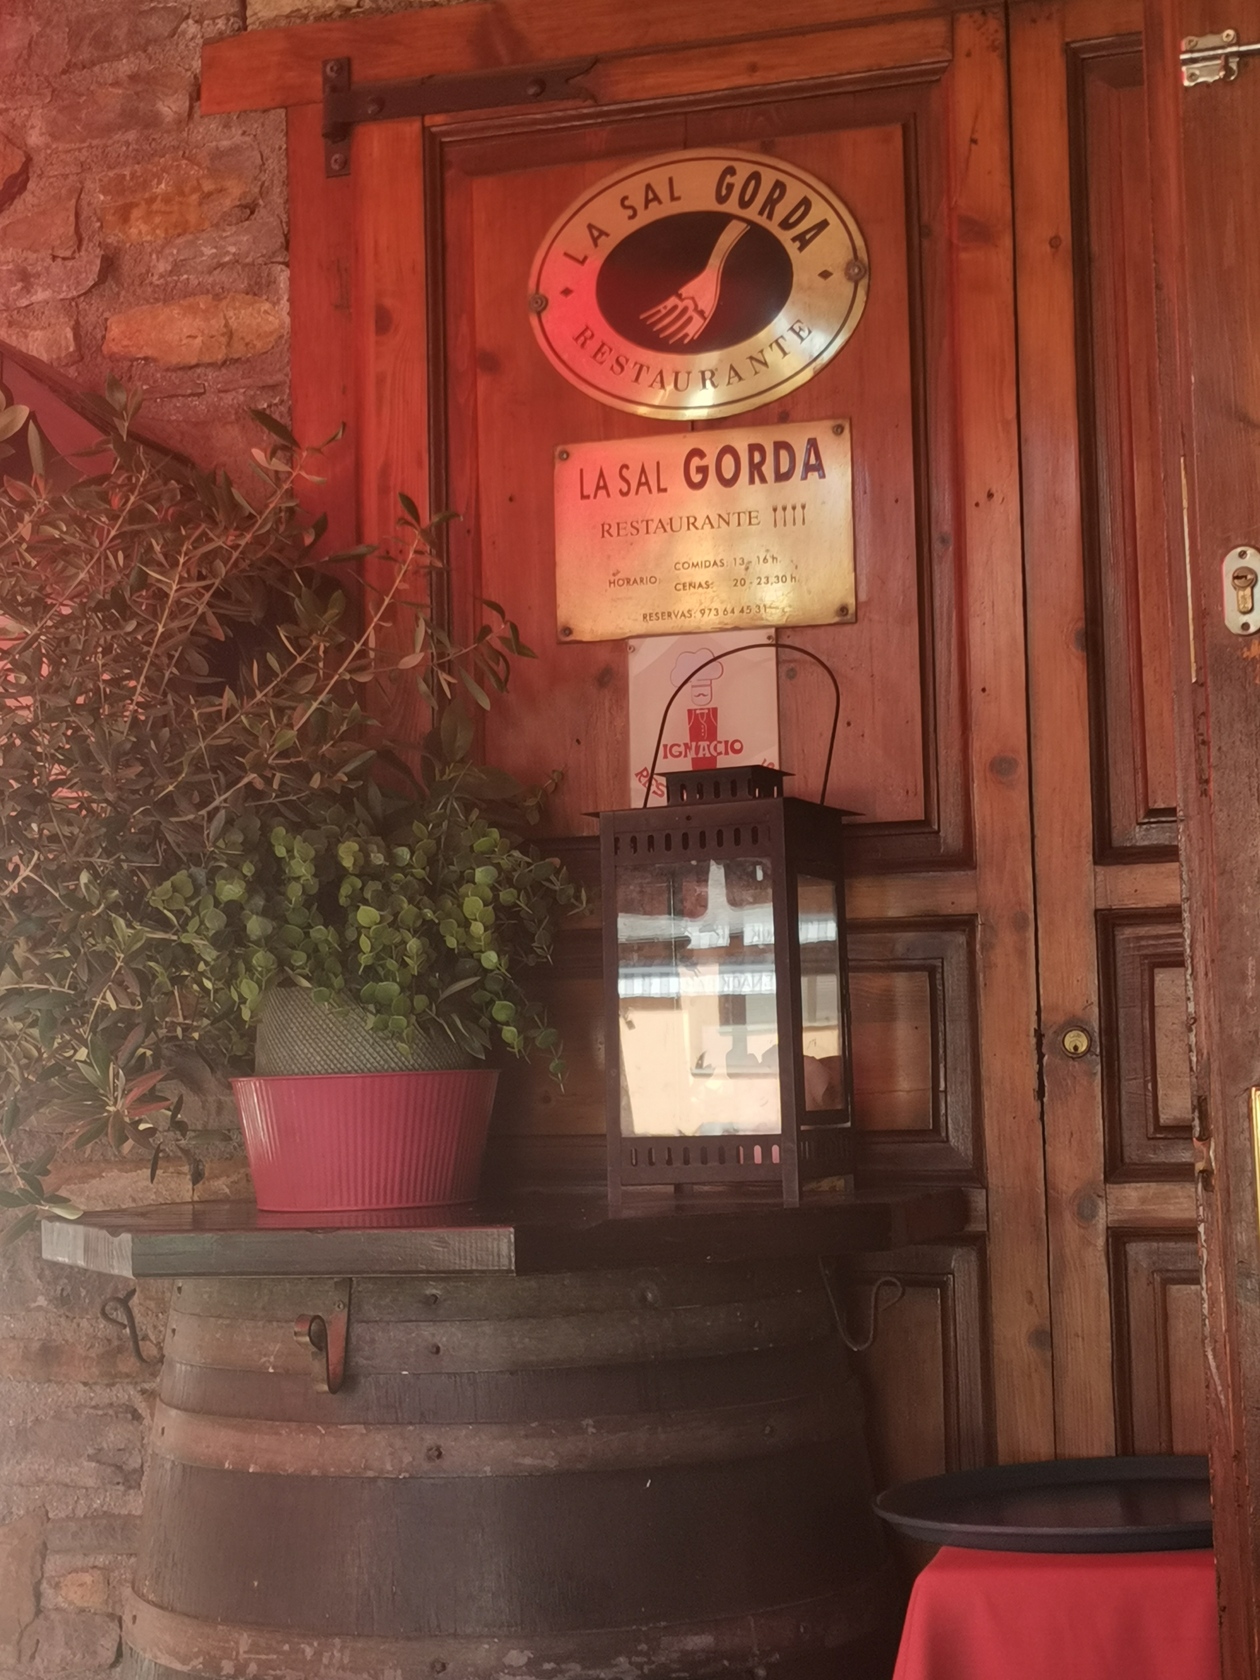 LA SAL GORDA, Baqueira - Fotos, Número de Teléfono y Restaurante Opiniones  - Tripadvisor